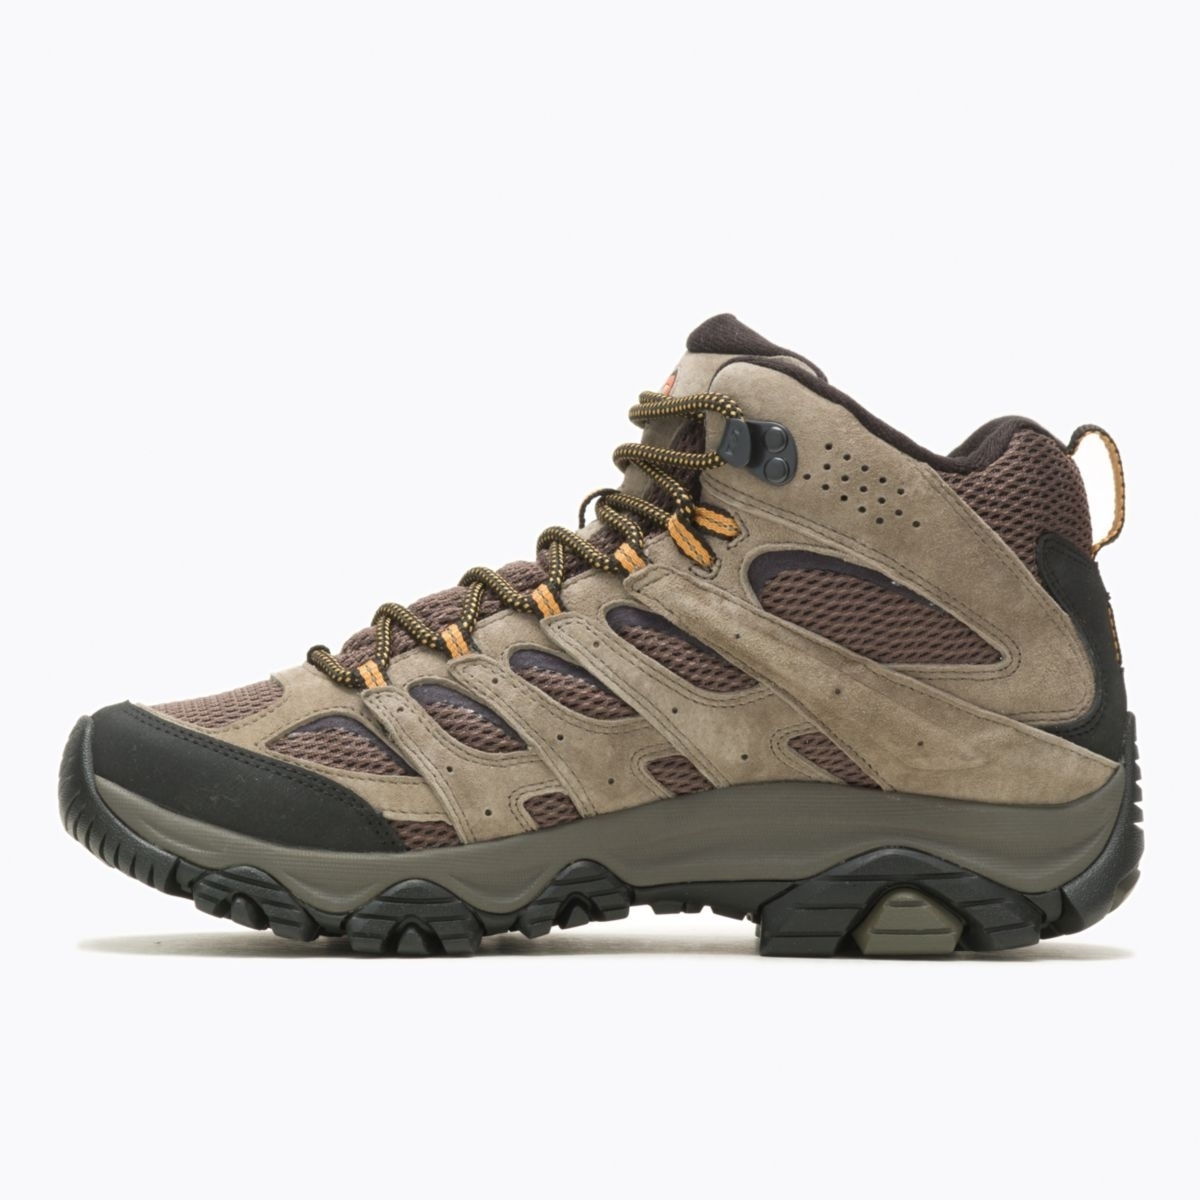 Merrell Men's Moab 3 Mid GORE-TEX Hiking Boot Walnut - J035795 WALNUT - WALNUT, 11.5